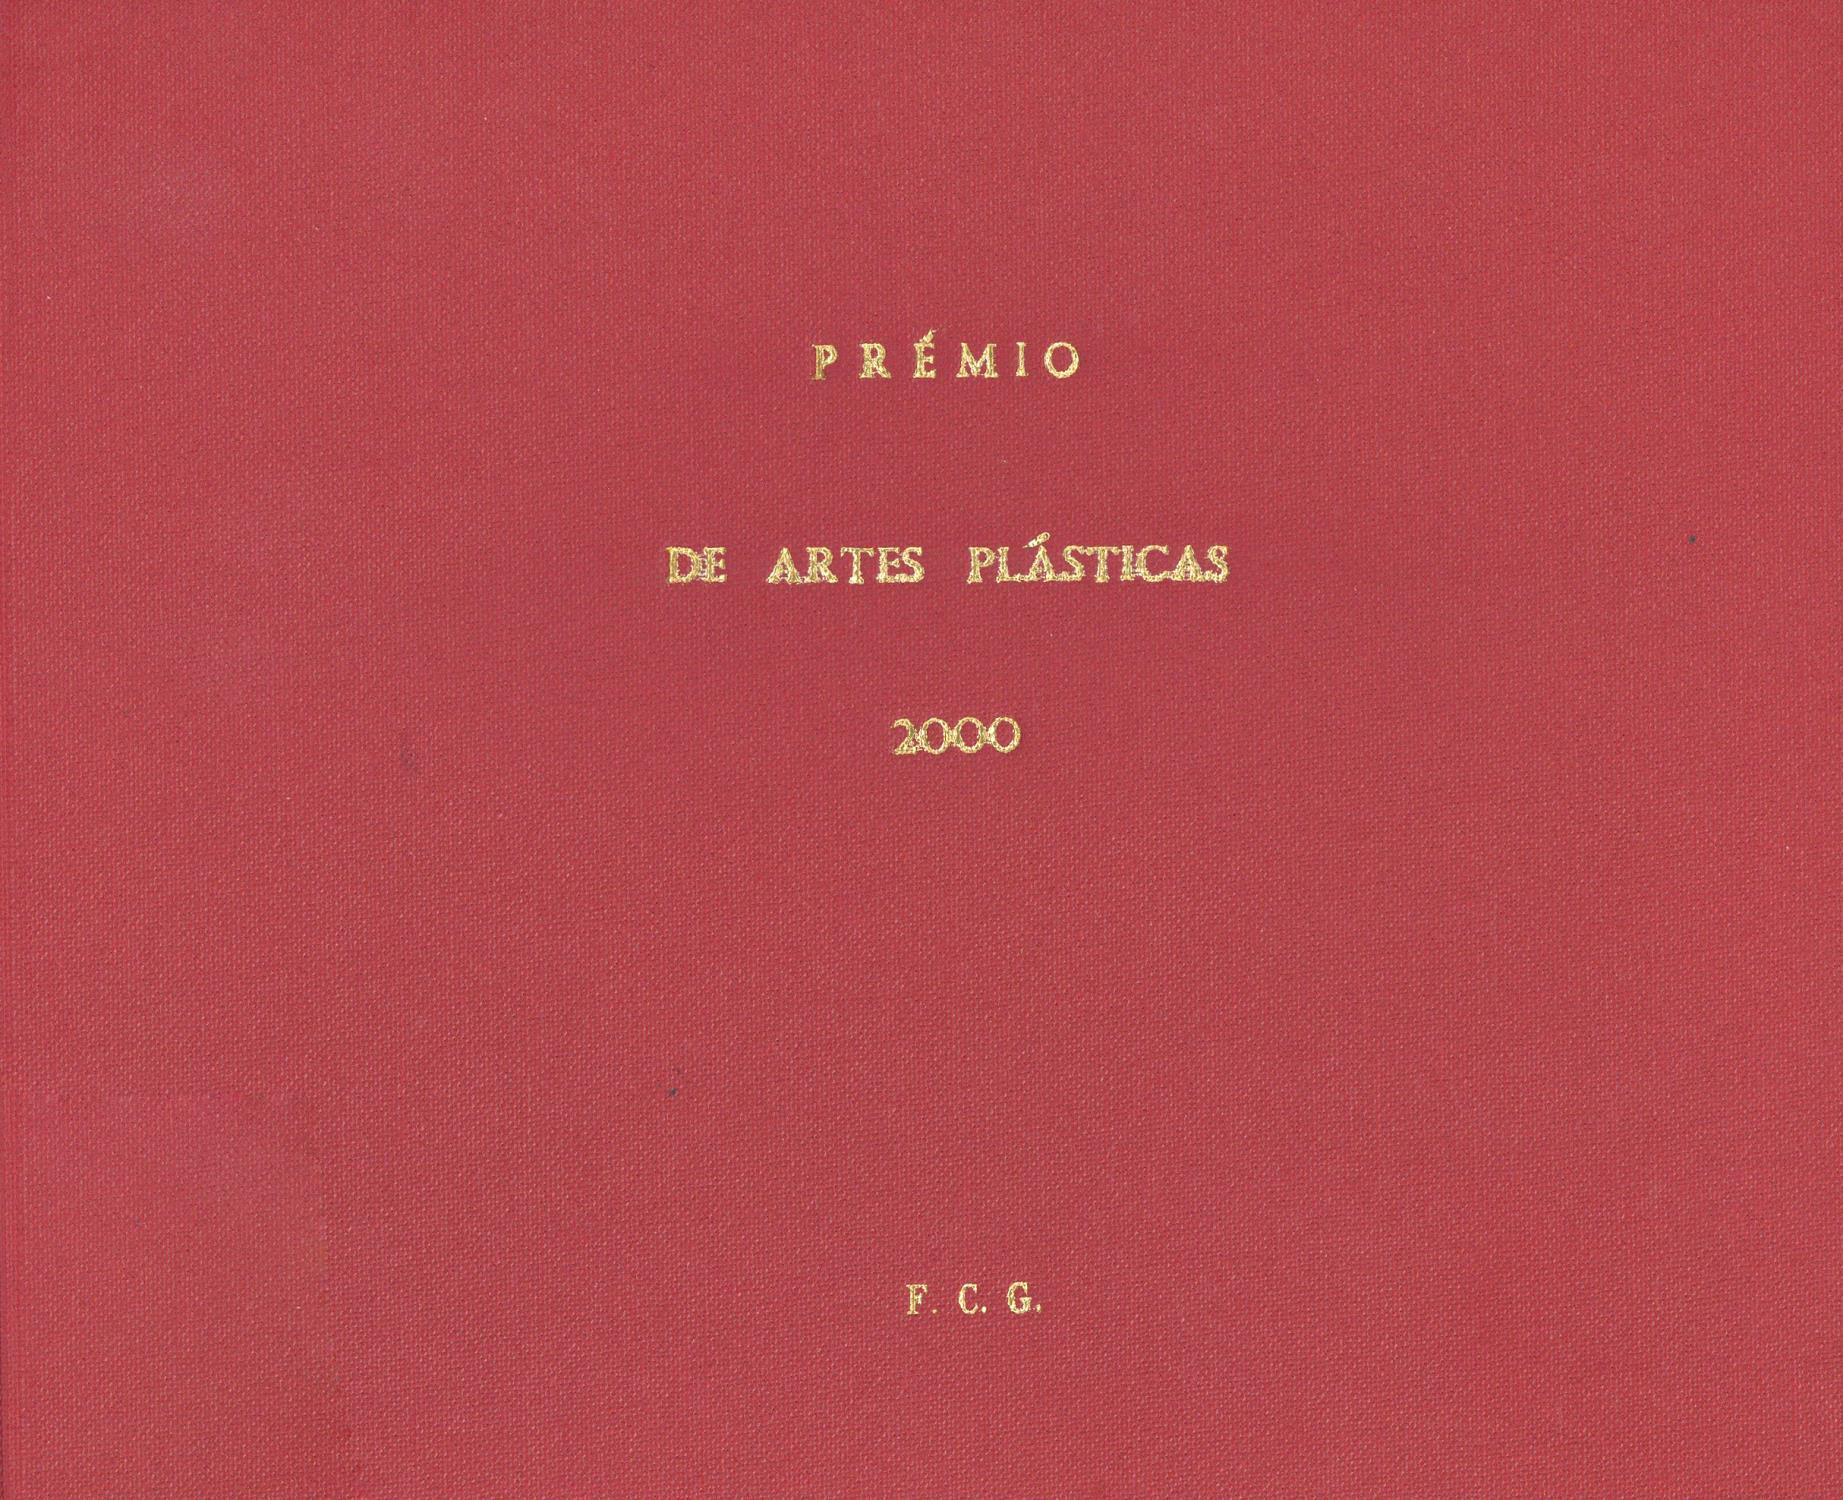 Prémio de Artes Plásticas União Latina 2000